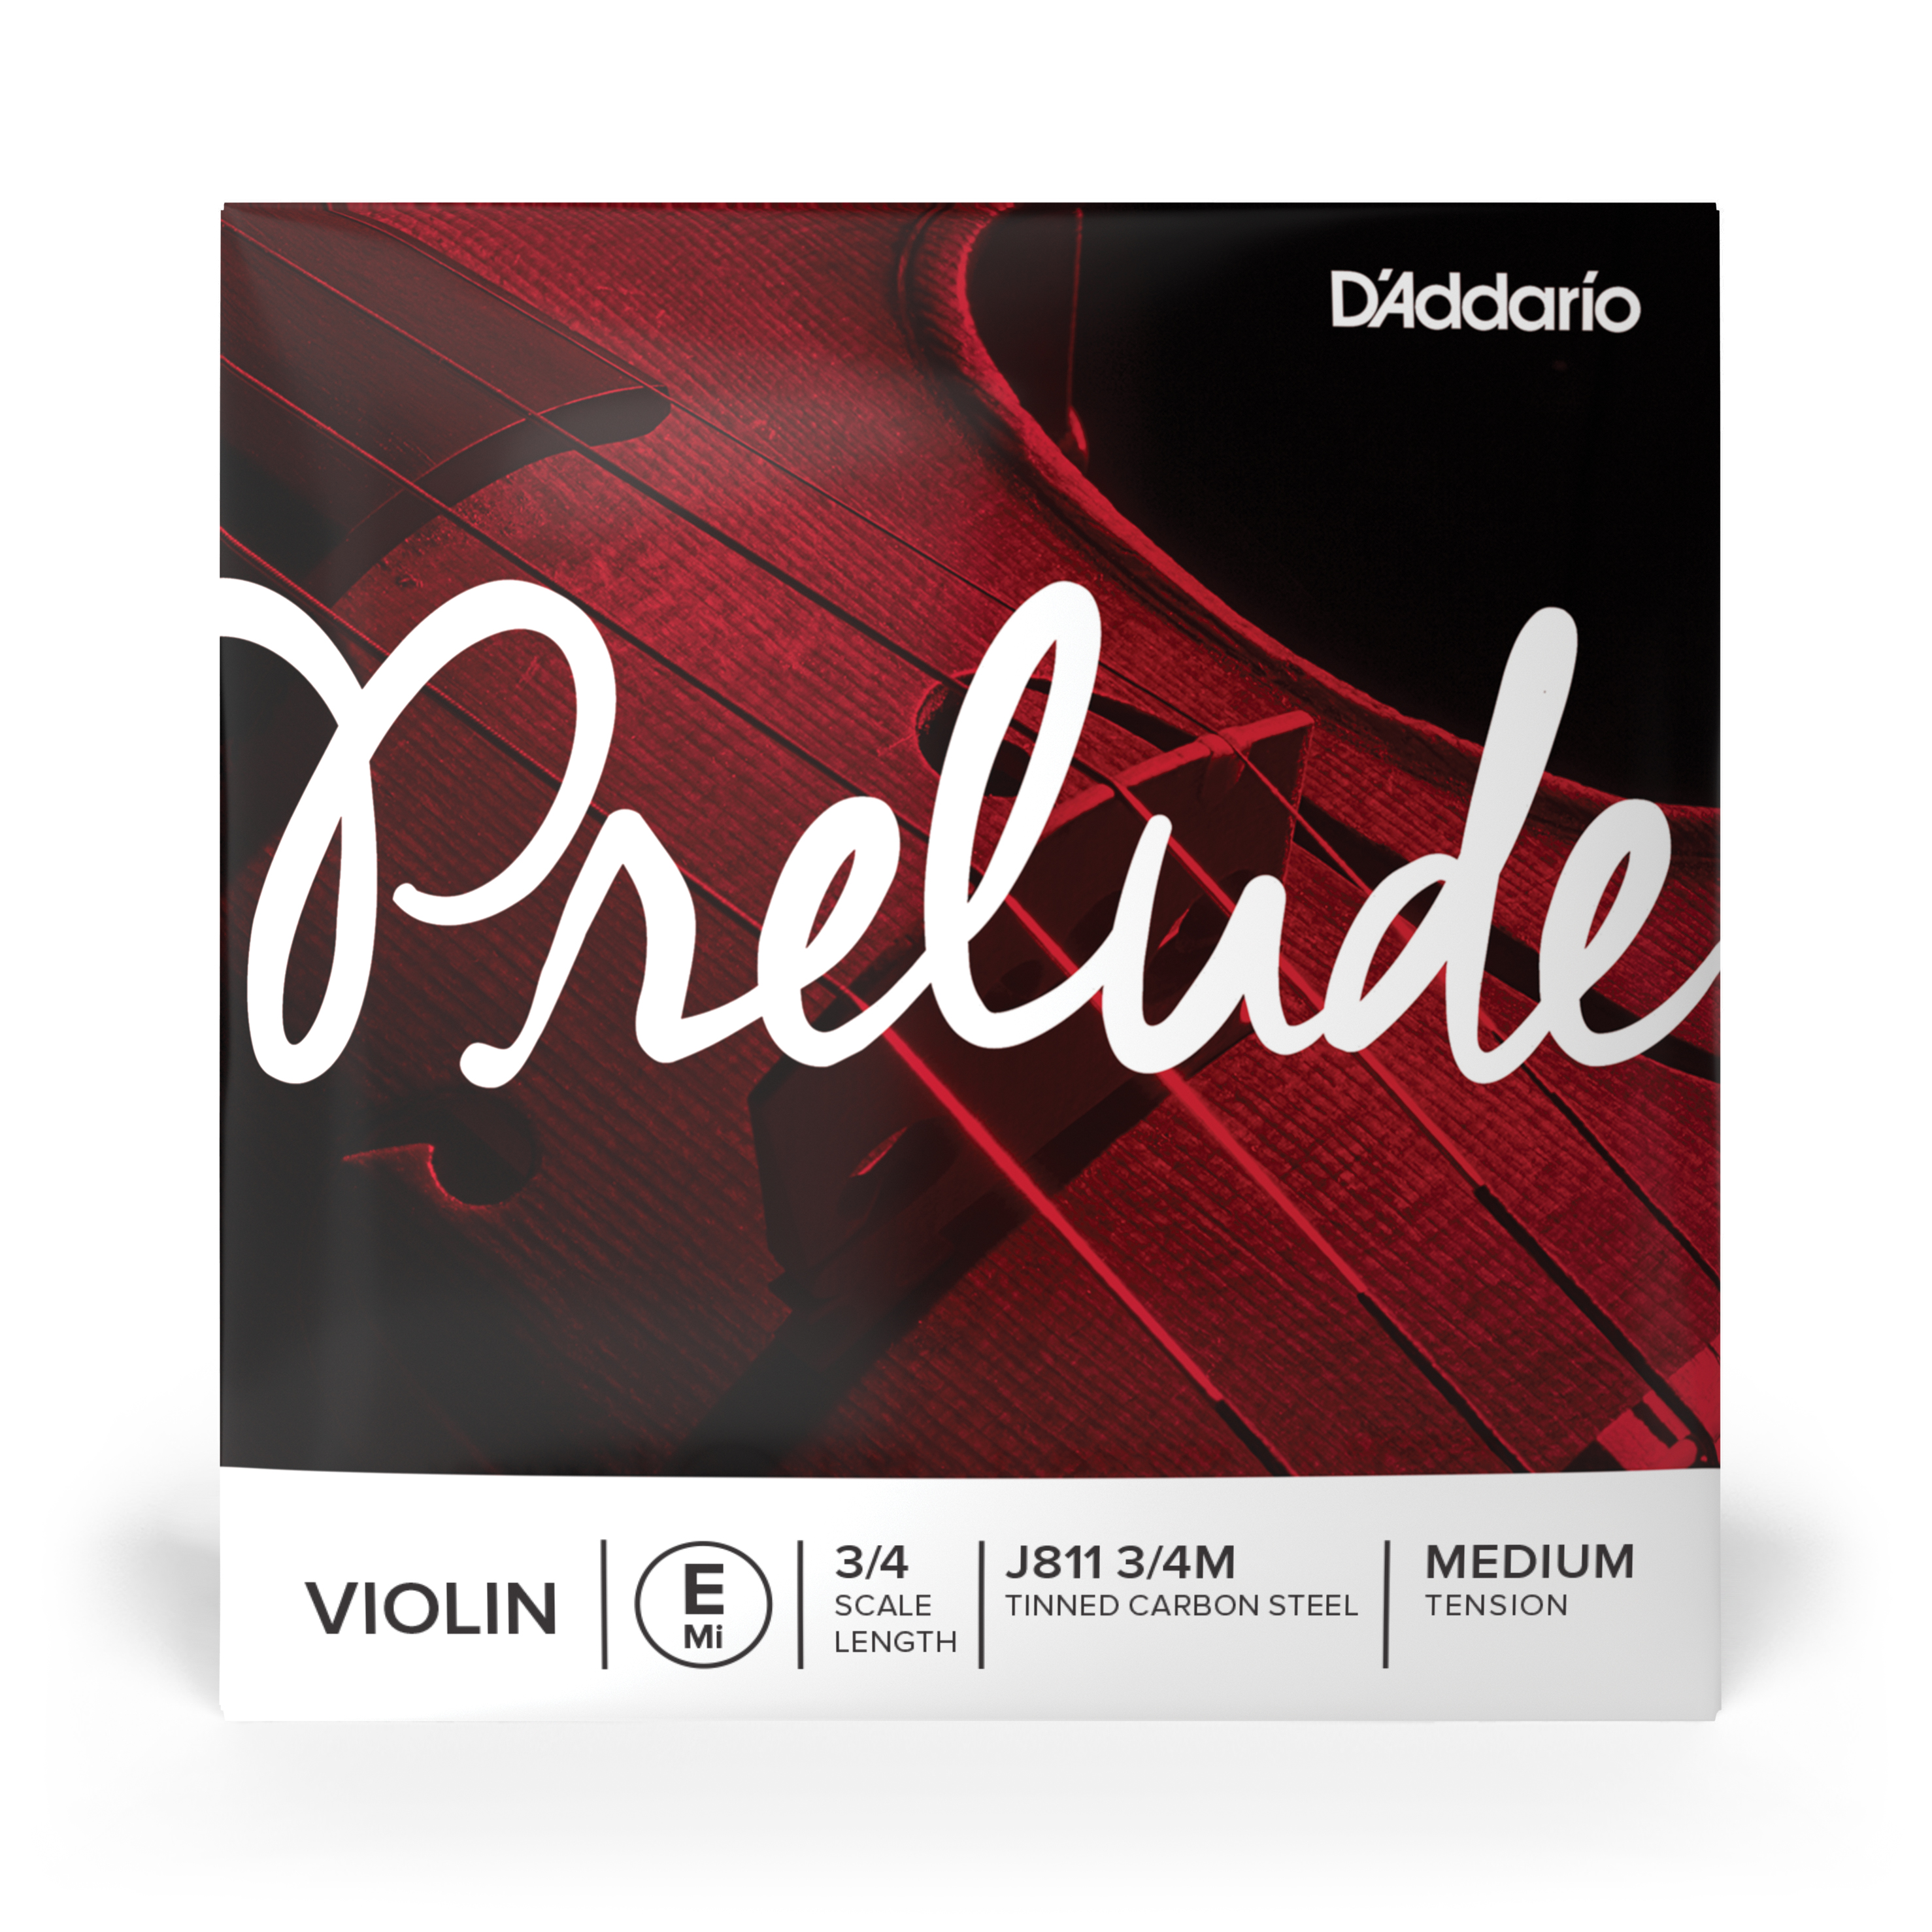 Daddario orchestral it J811 3/4m corda singola mi d'addario prelude per violino, scala 3/4, tensione media